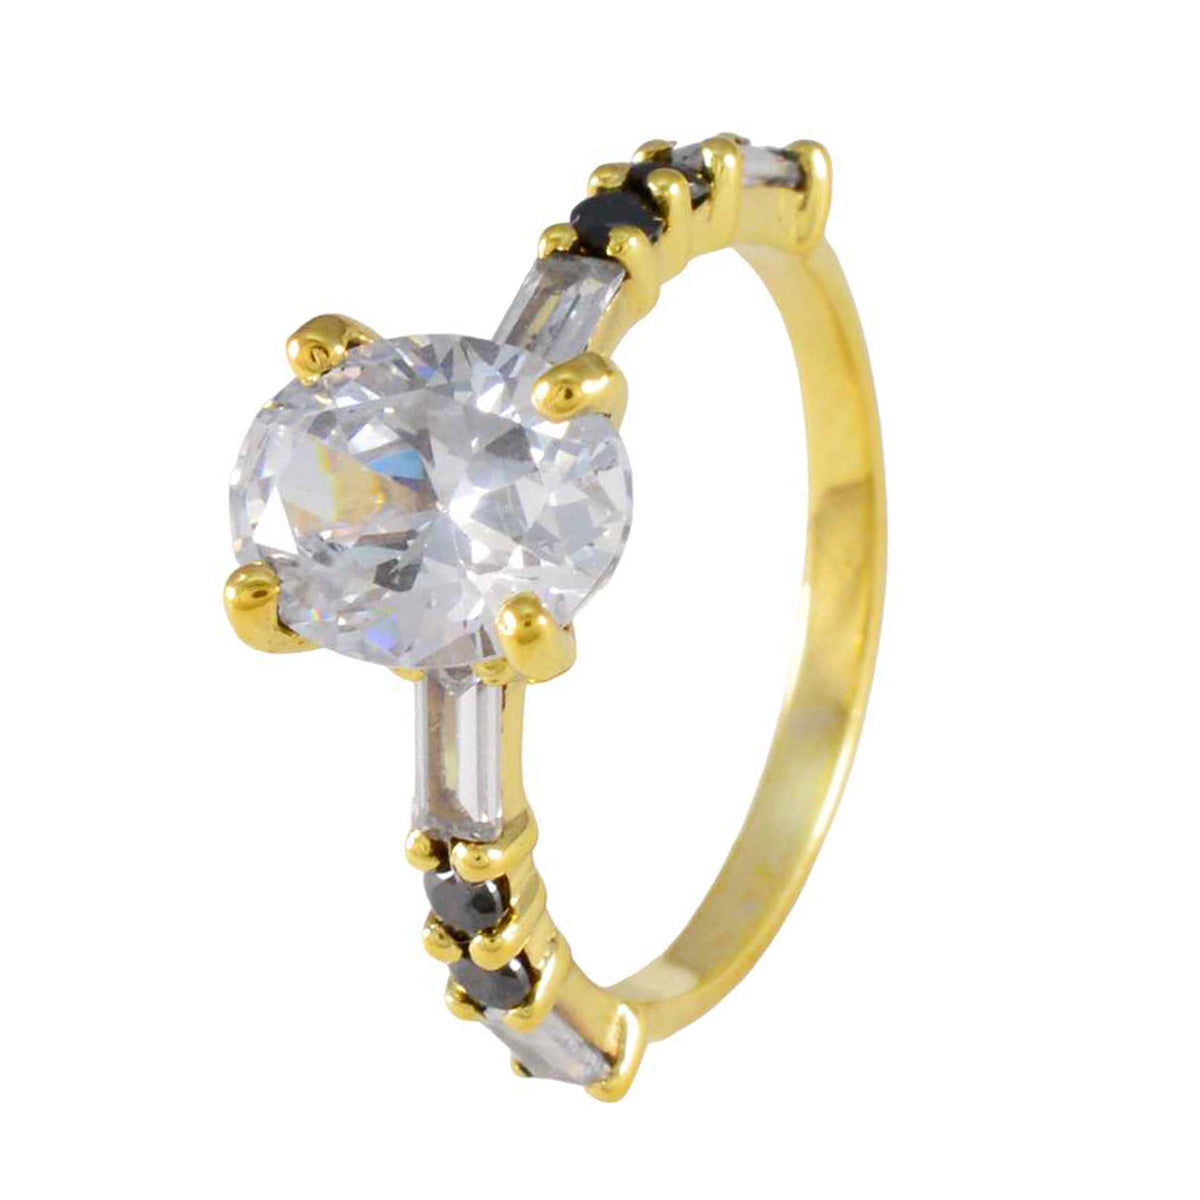 anello riyo prime in argento con placcatura in oro giallo, pietra di zaffiro blu, forma ovale, montatura a punta, anello natalizio per gioielli di moda